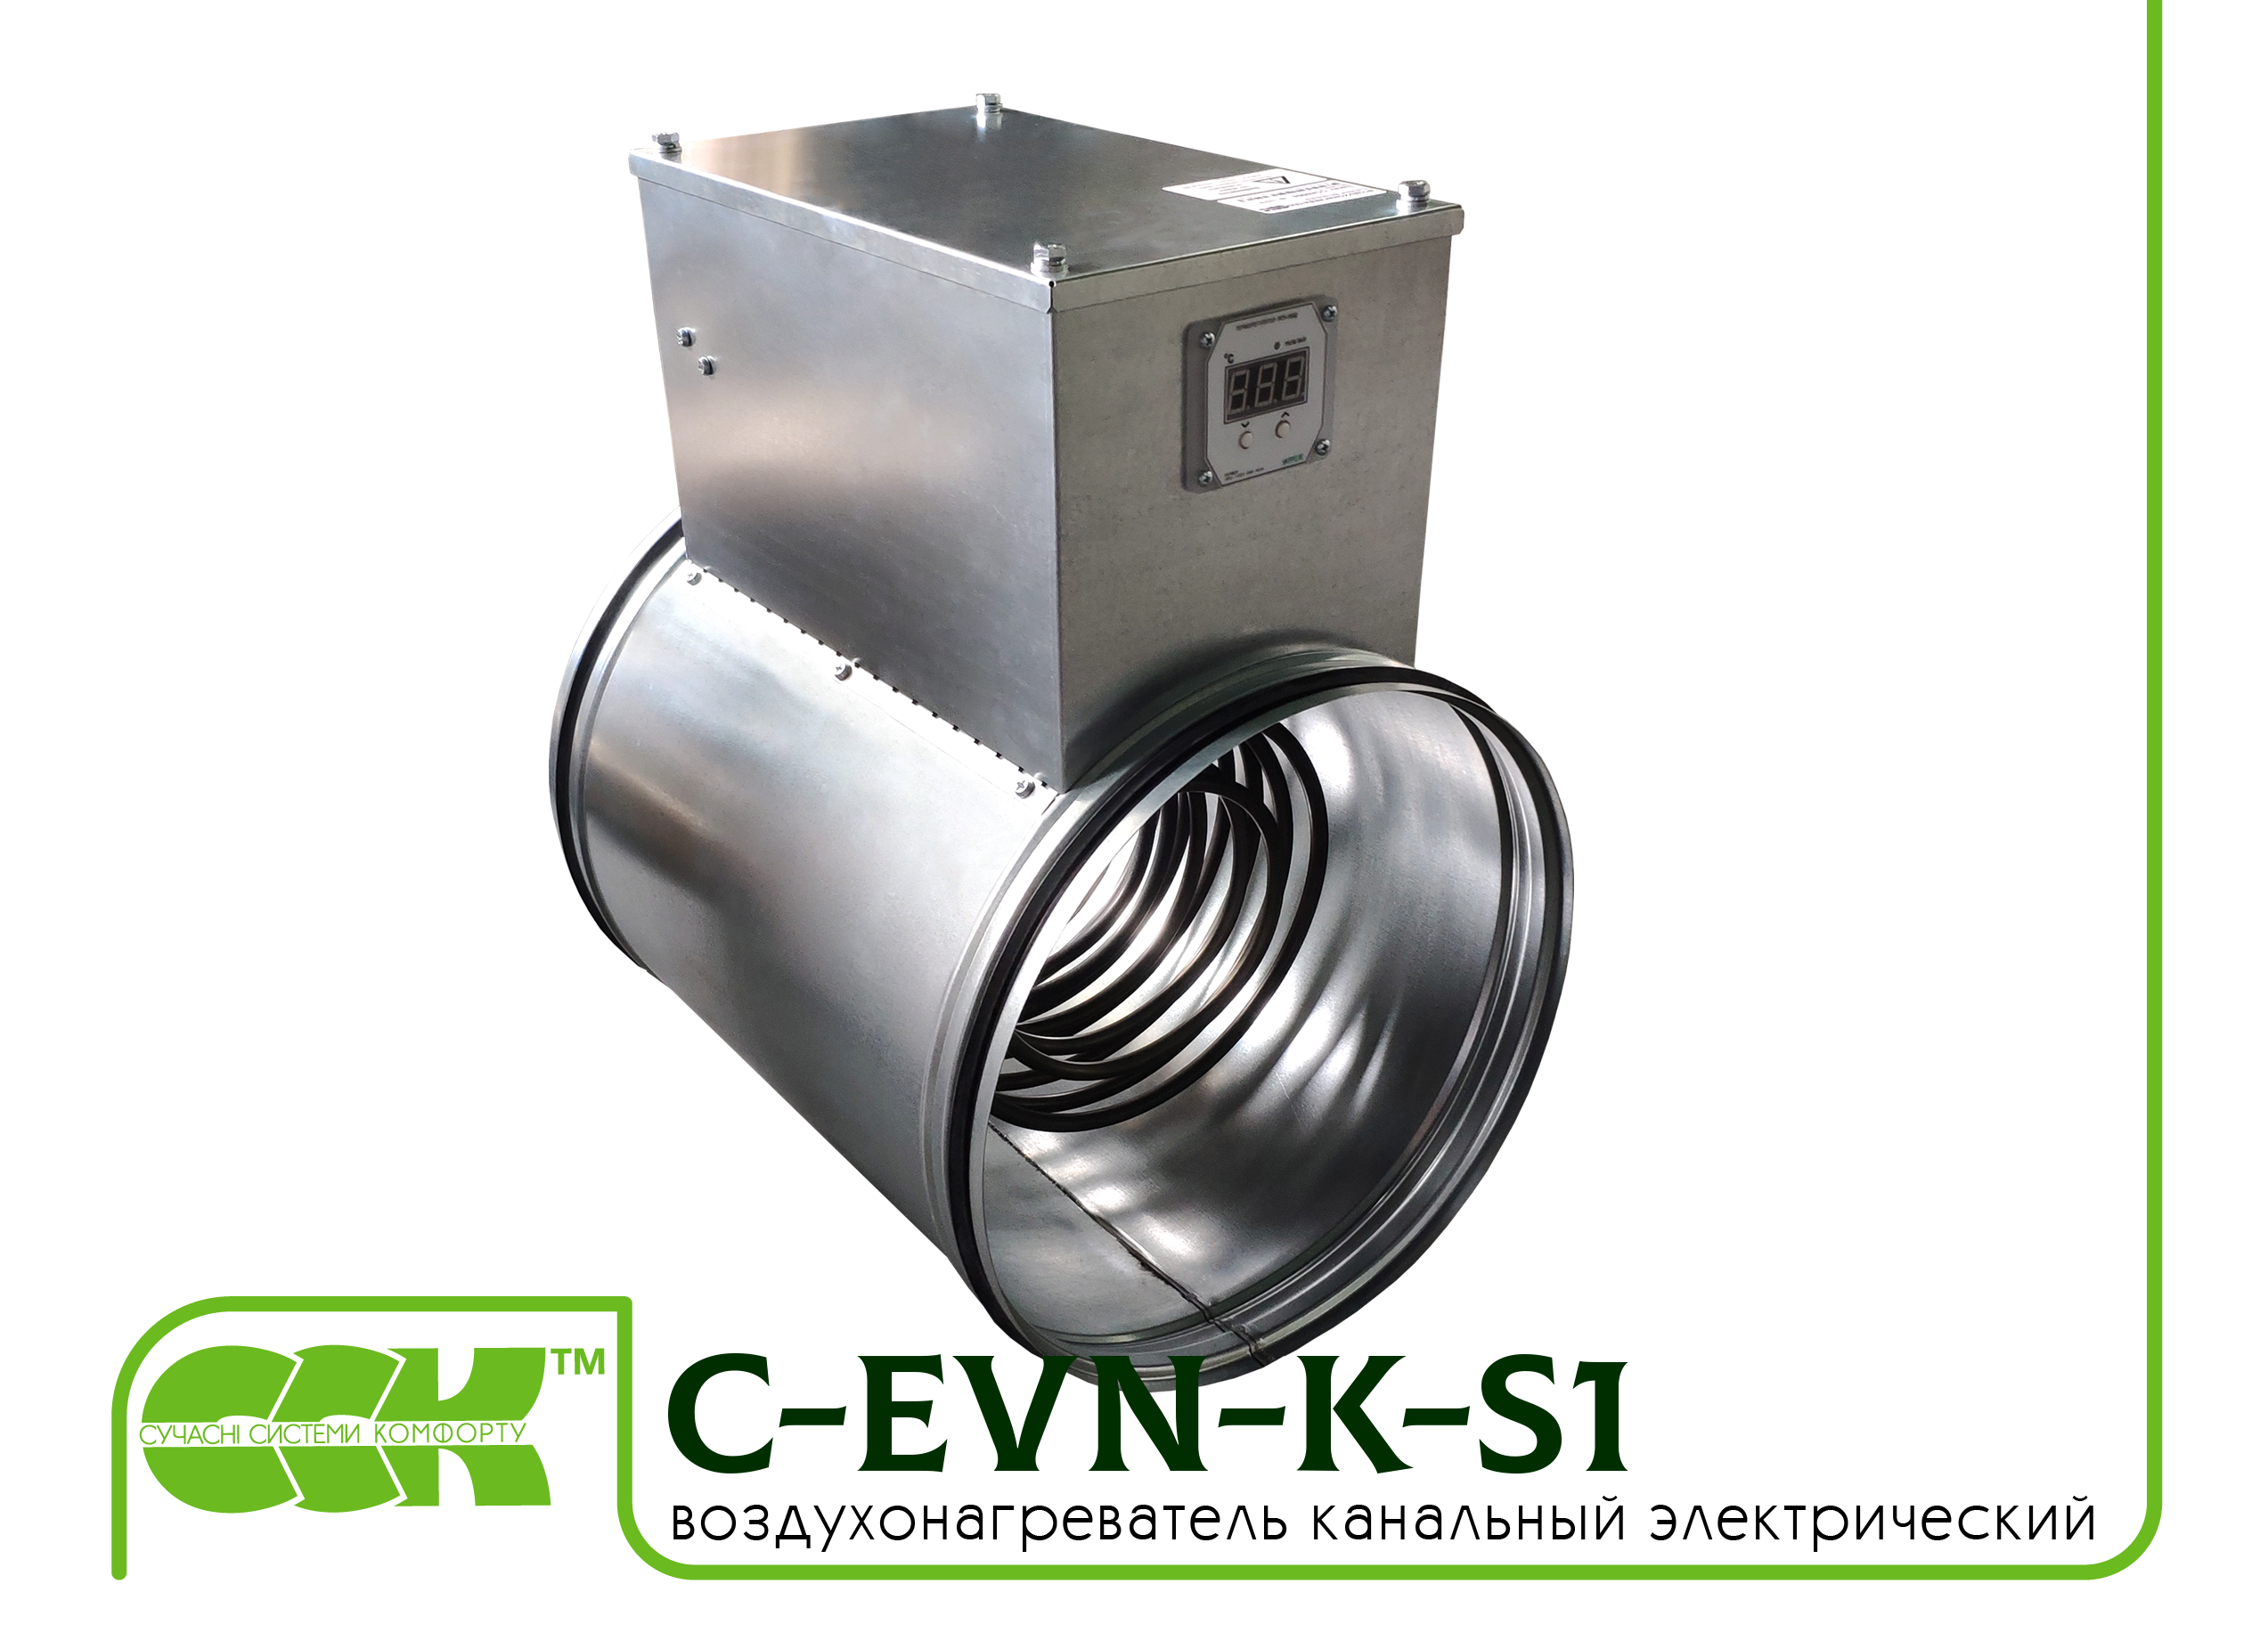 Воздухонагреватель канальный электрический для круглых каналов C-EVN-K-S1-125-2,4